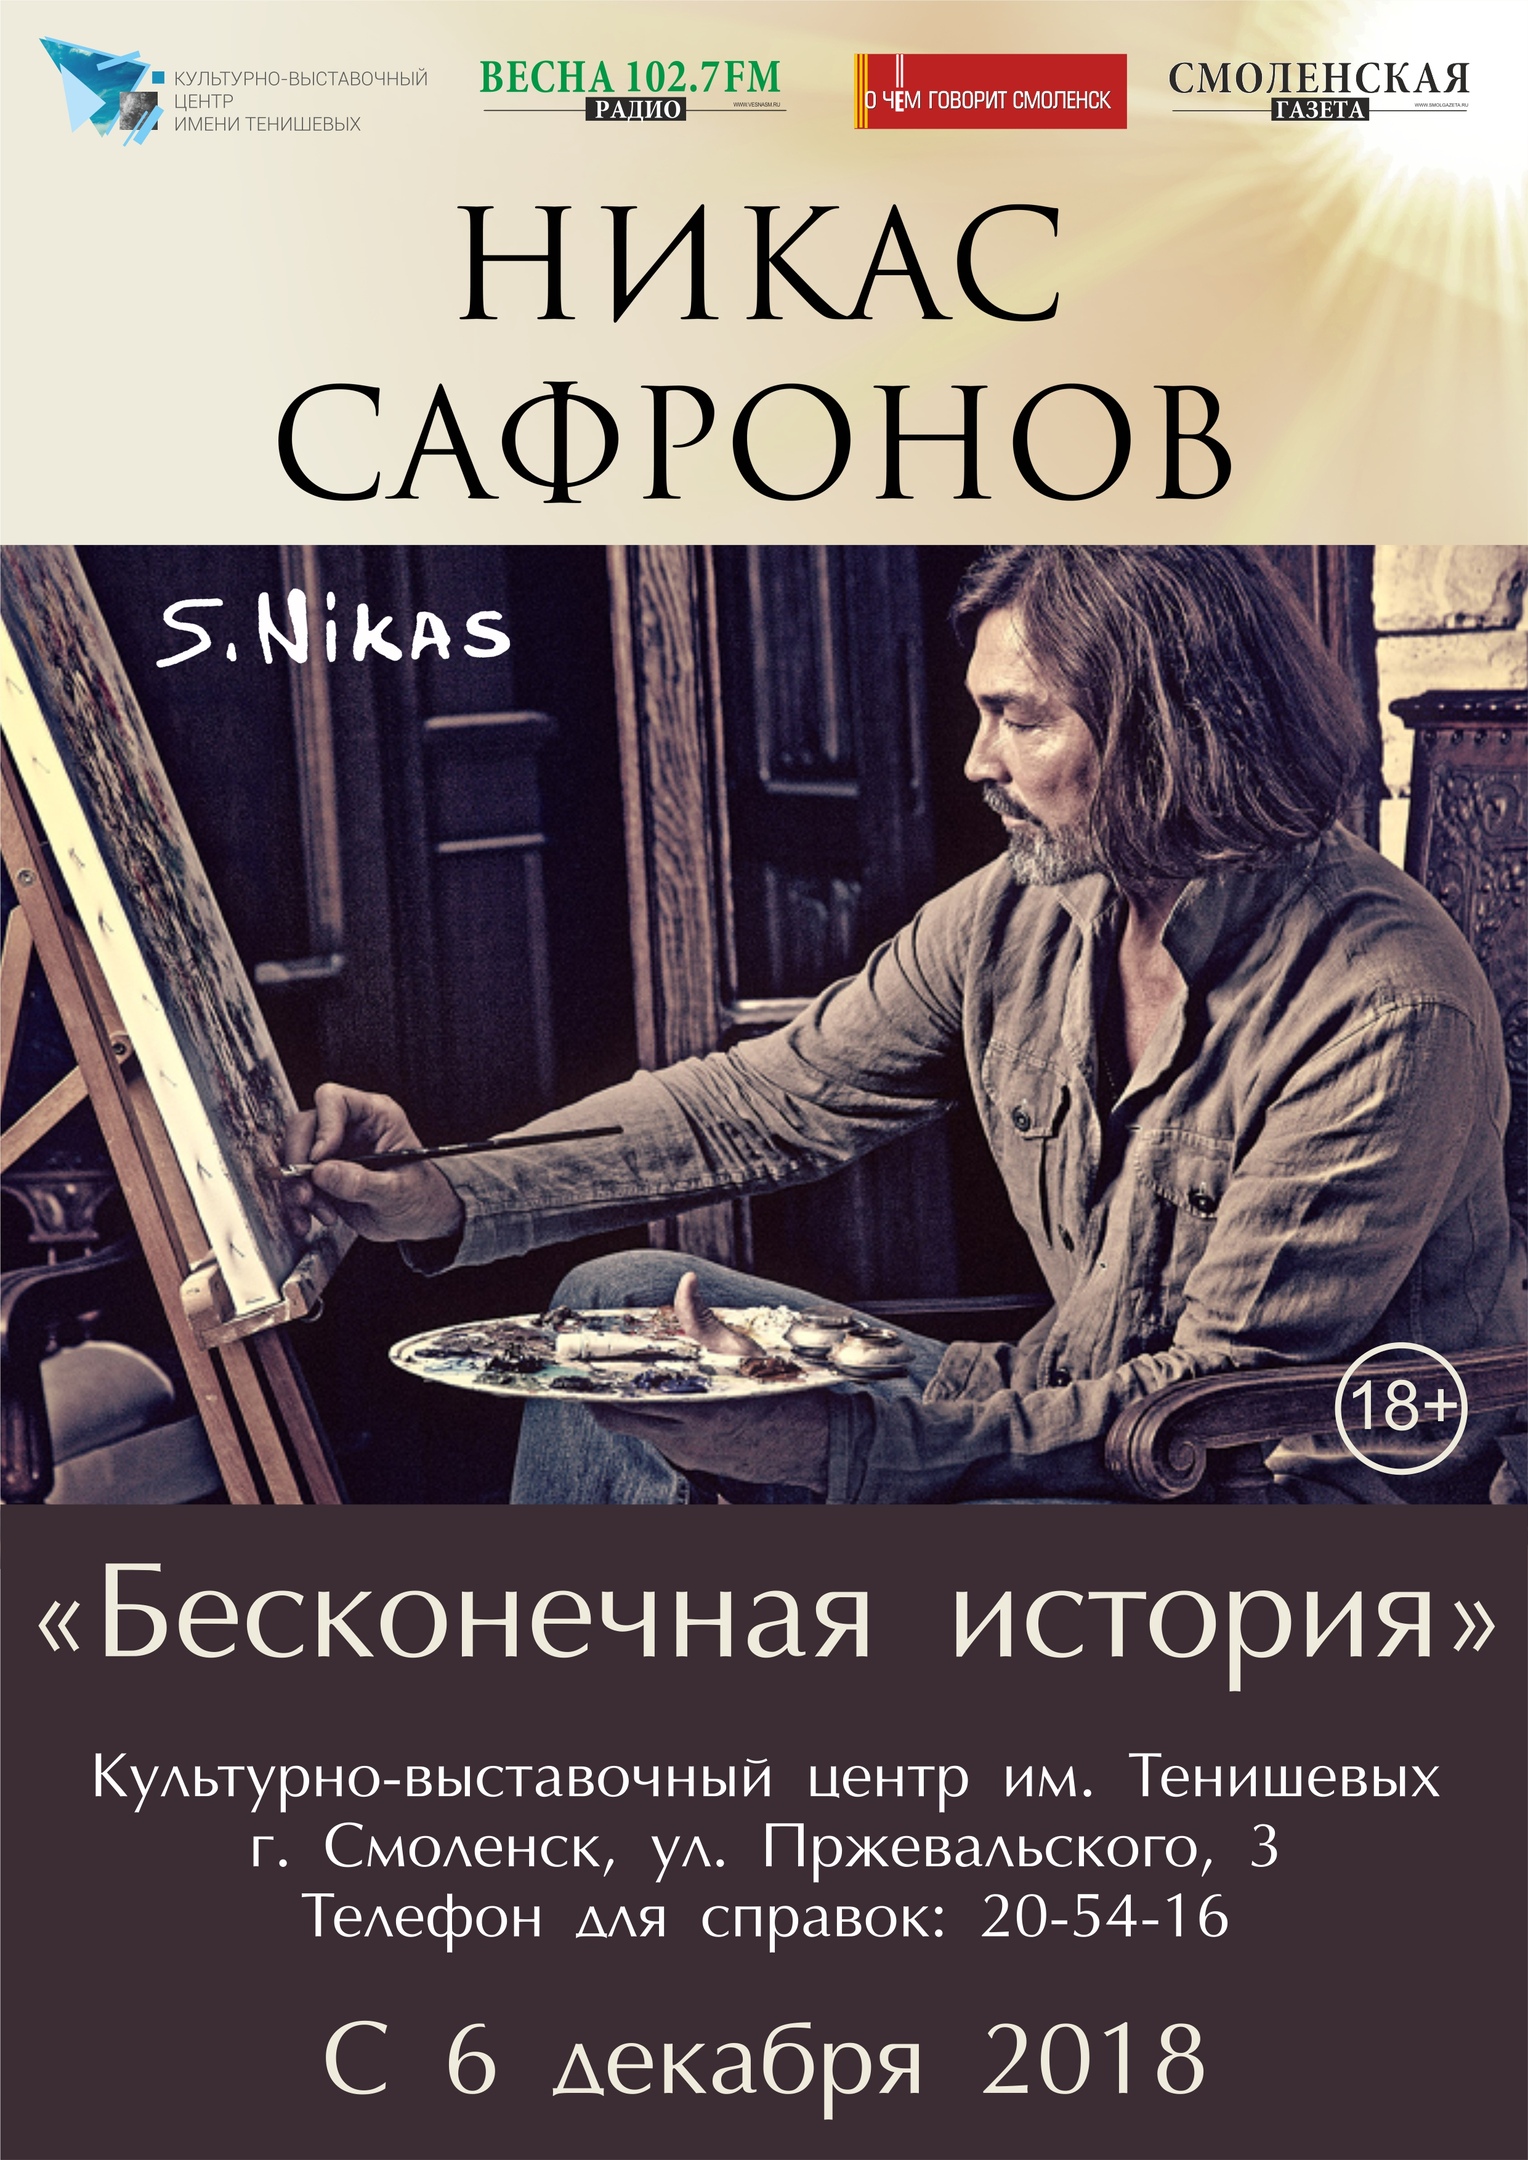 Жителям Смоленска представят картины знаменитого художника Никаса Сафронова